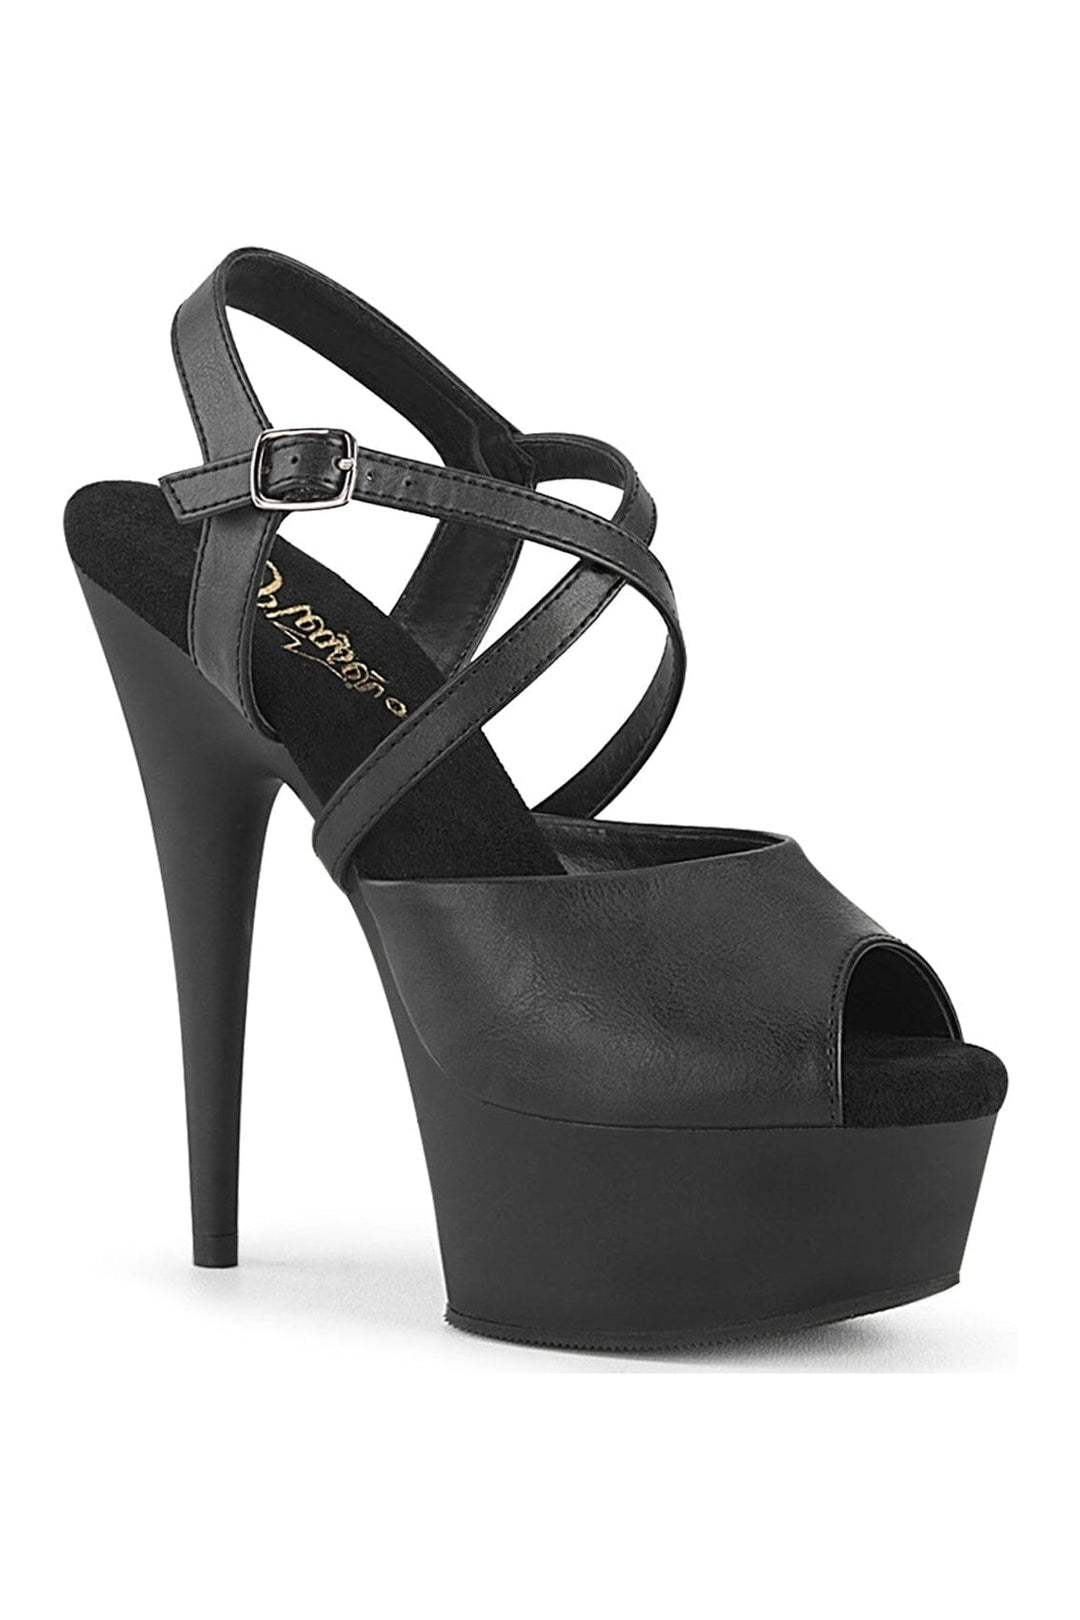 DELIGHT-624-1 Black Faux Leather Sandal-Sandals-Pleaser-Black-10-Faux Leather-SEXYSHOES.COM